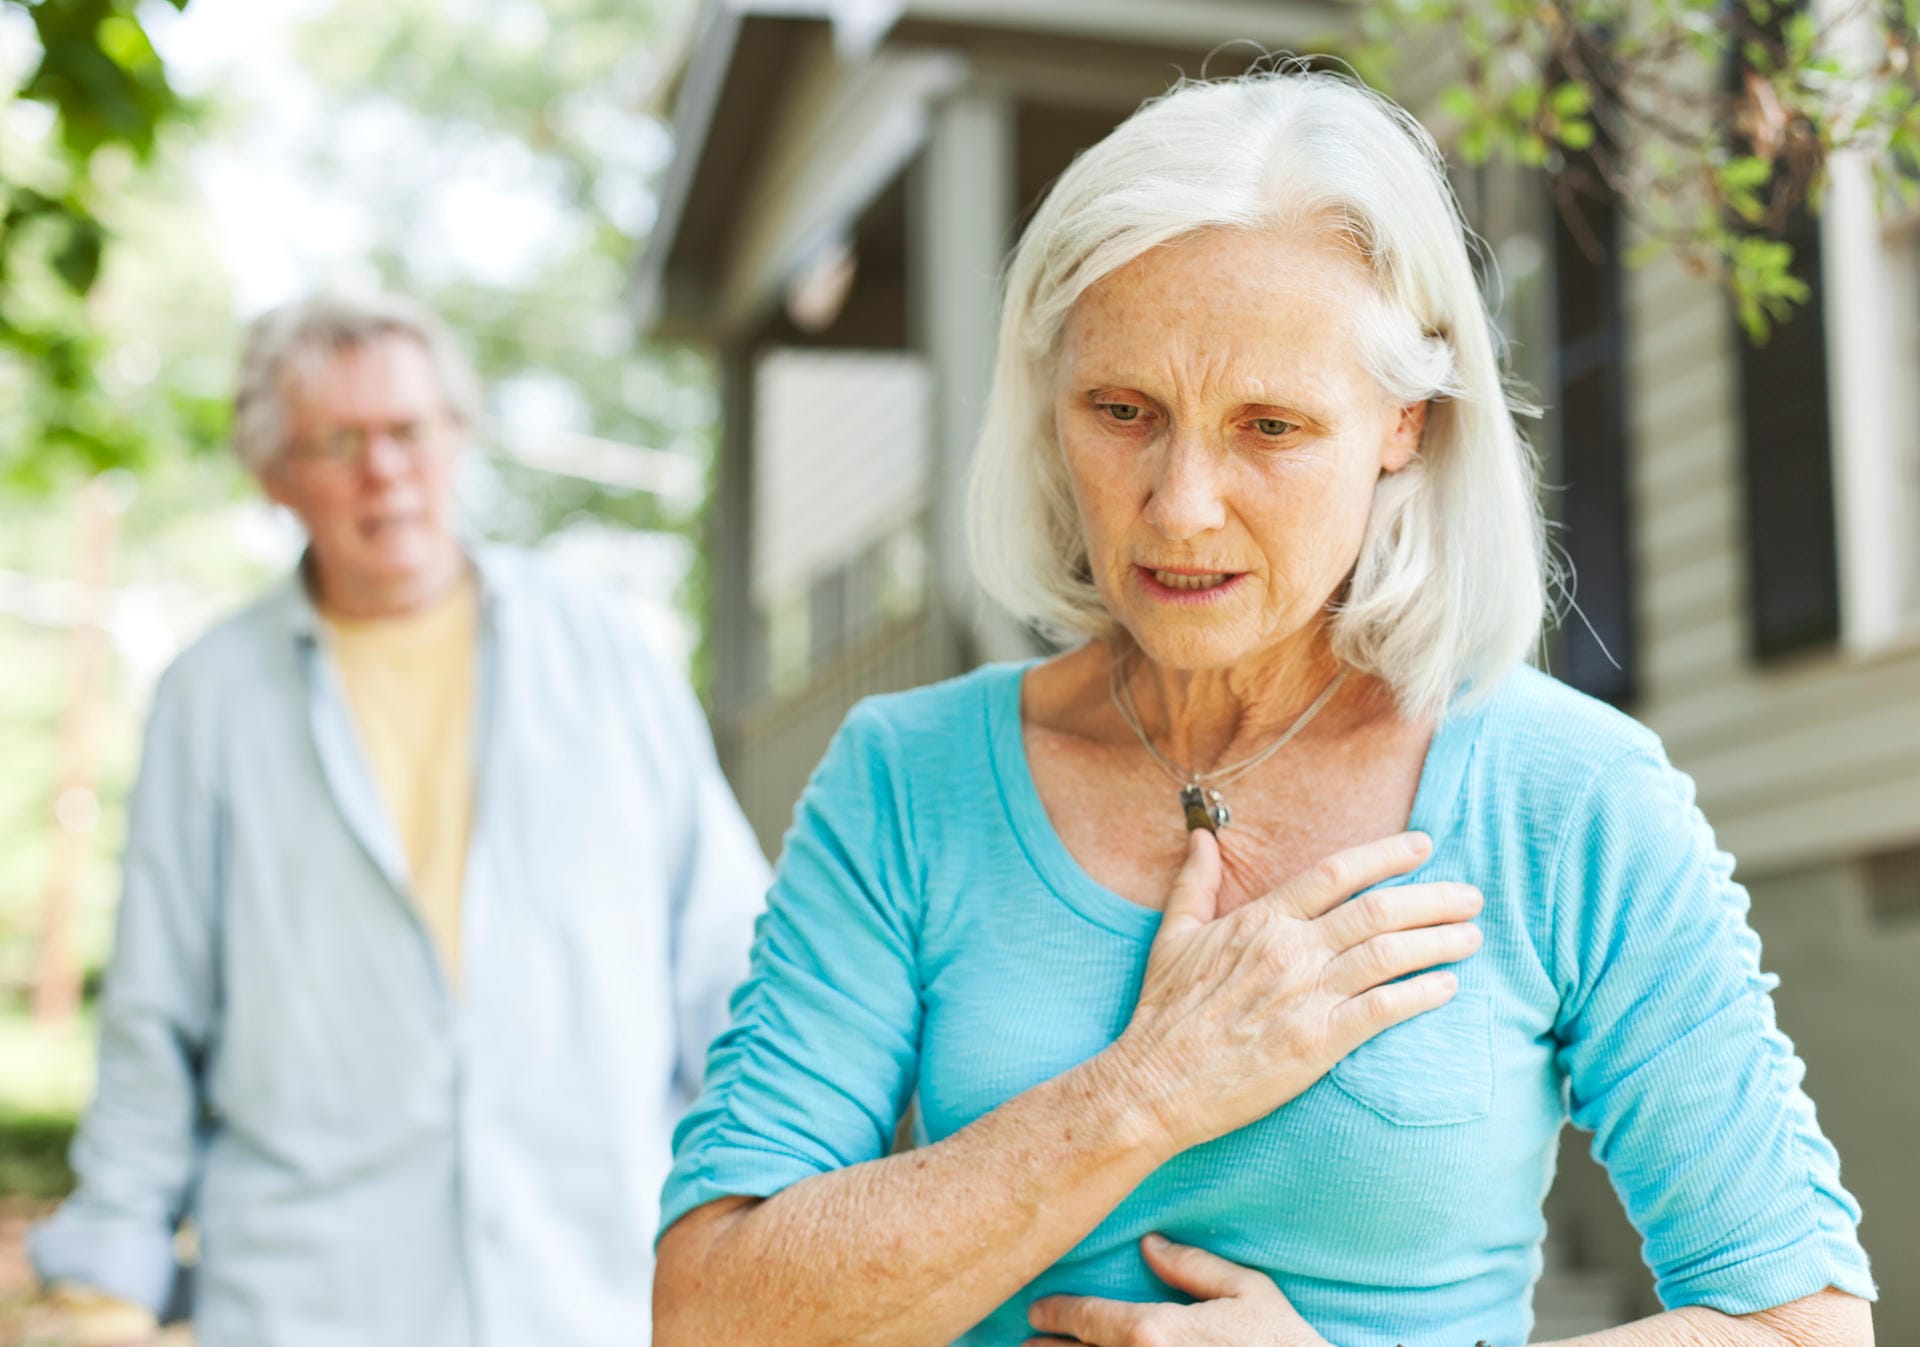 3. Herz-Kreislauf-Erkrankungen. Im Fall von Herz-Kreislauf-Erkrankungen ist das Gehirn nicht immer optimal mit Sauerstoff versorgt - auch das kann Tinnitus verursachen. Ein veränderter Blutdruck sorgt zudem häufig für Ohrensausen.